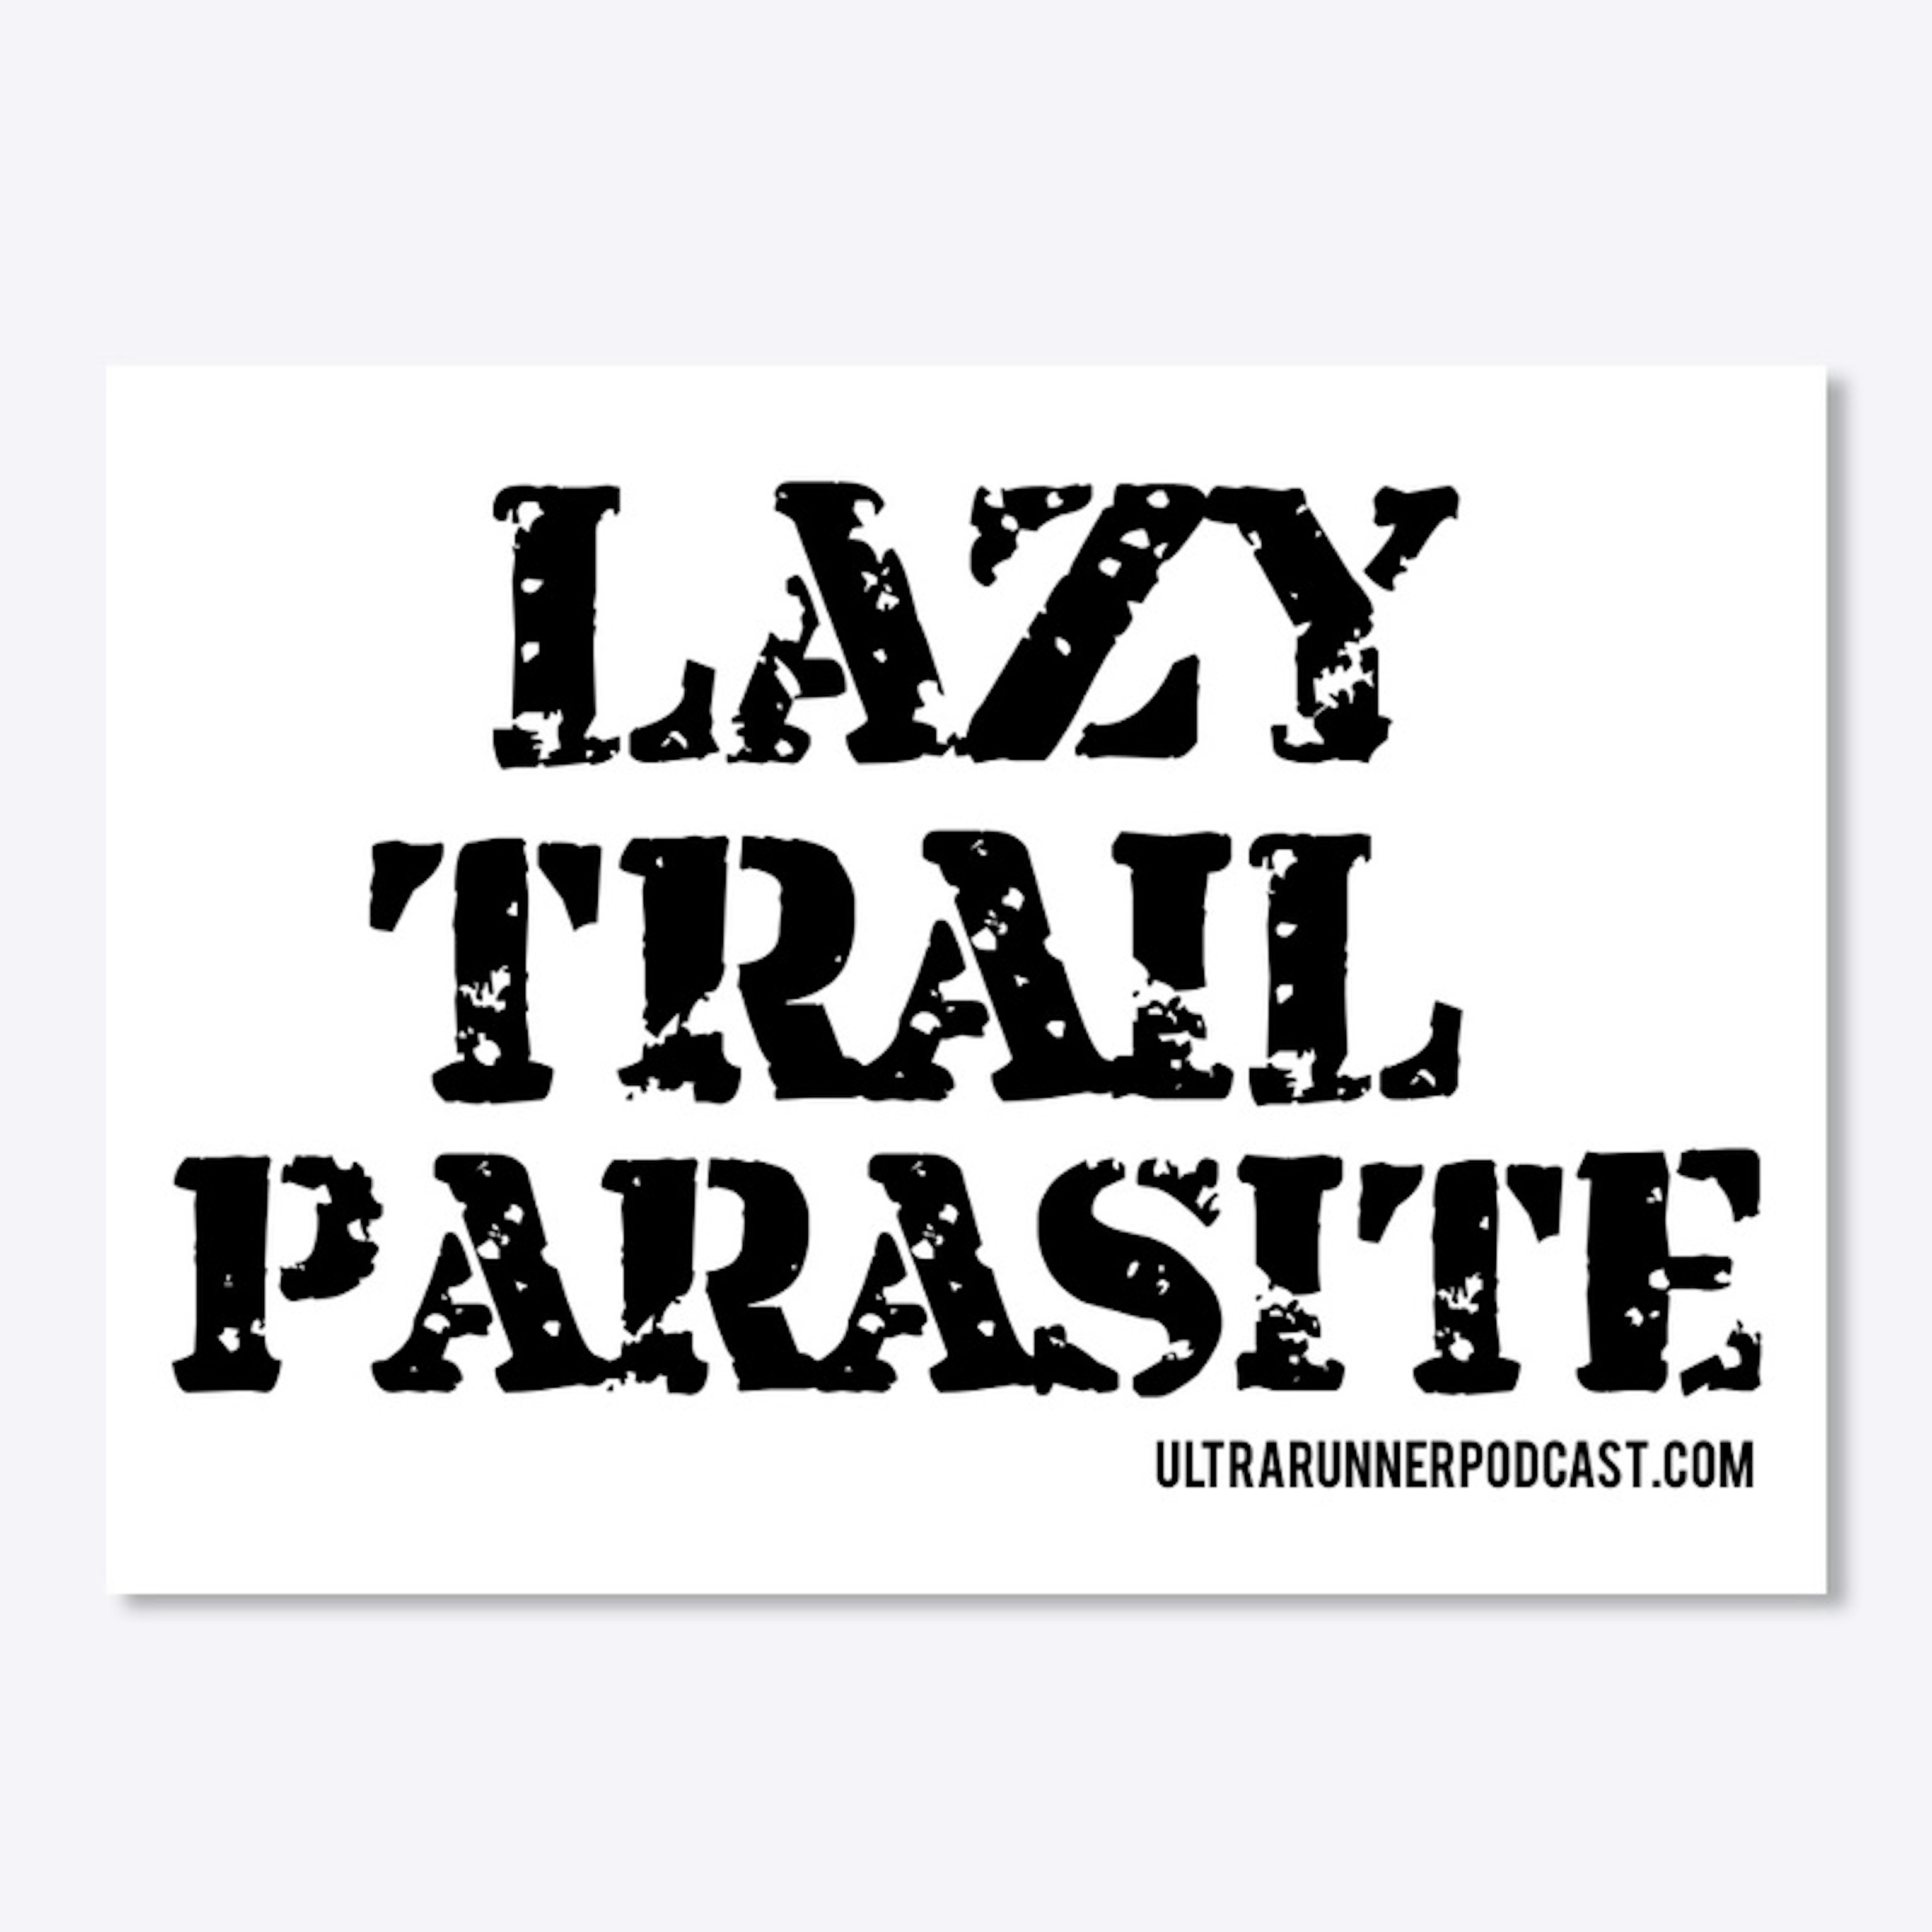 LAZY TRAIL PARASITE SHIRT